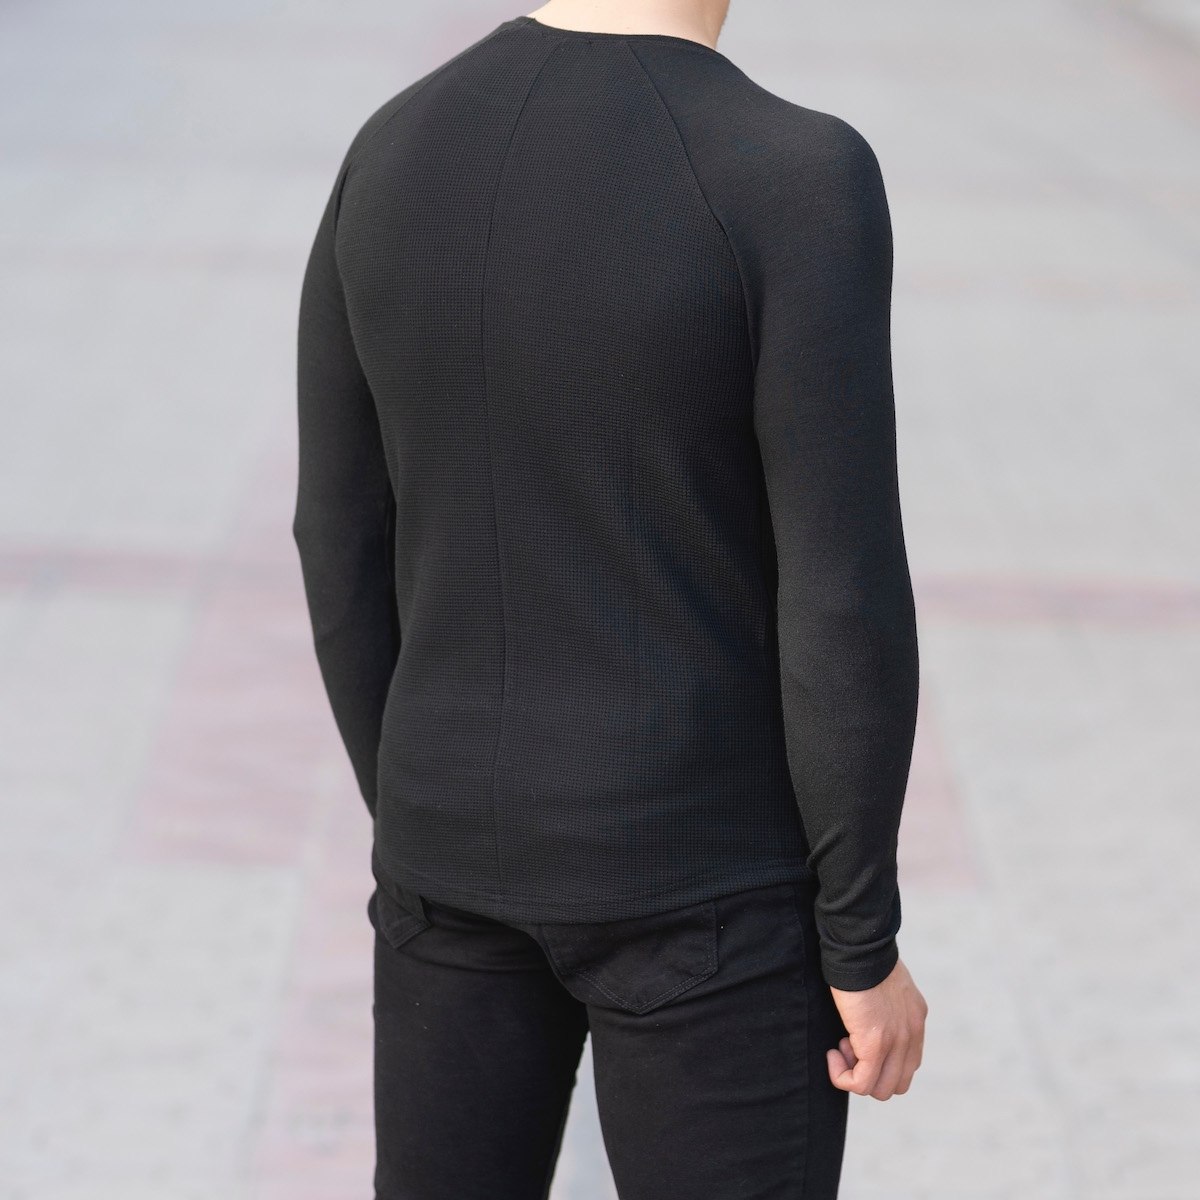 Herren Slim-Fit Sweatshirt in schwarz - 3